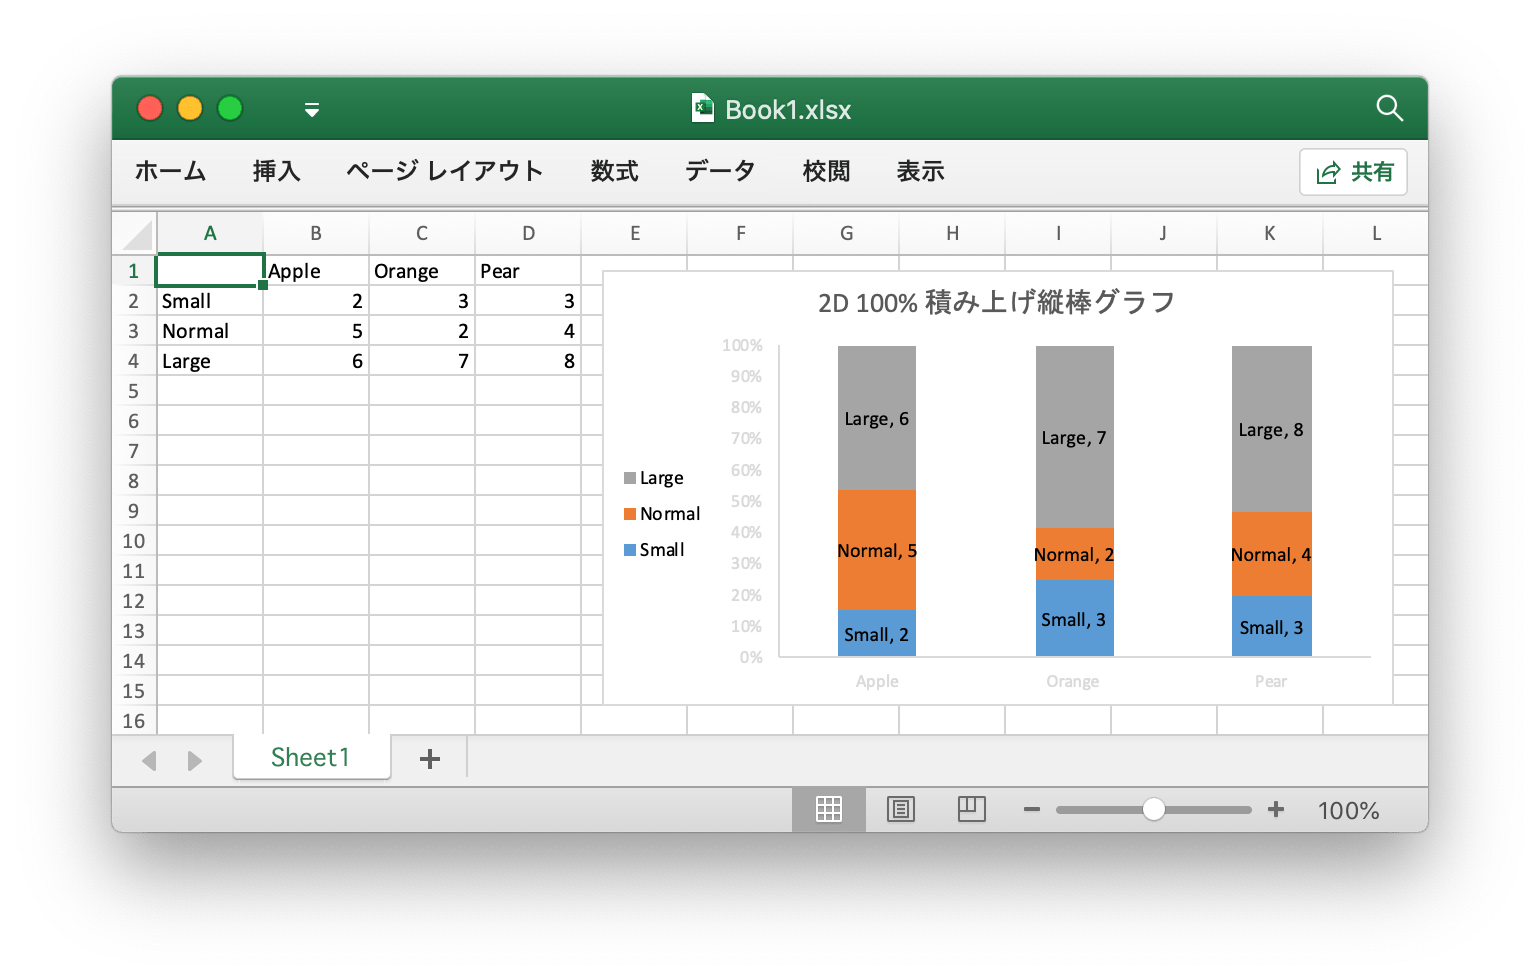 Go 言語を使用して Excel ドキュメントで 2D 100% 積み上げ縦棒グラフ 作成する